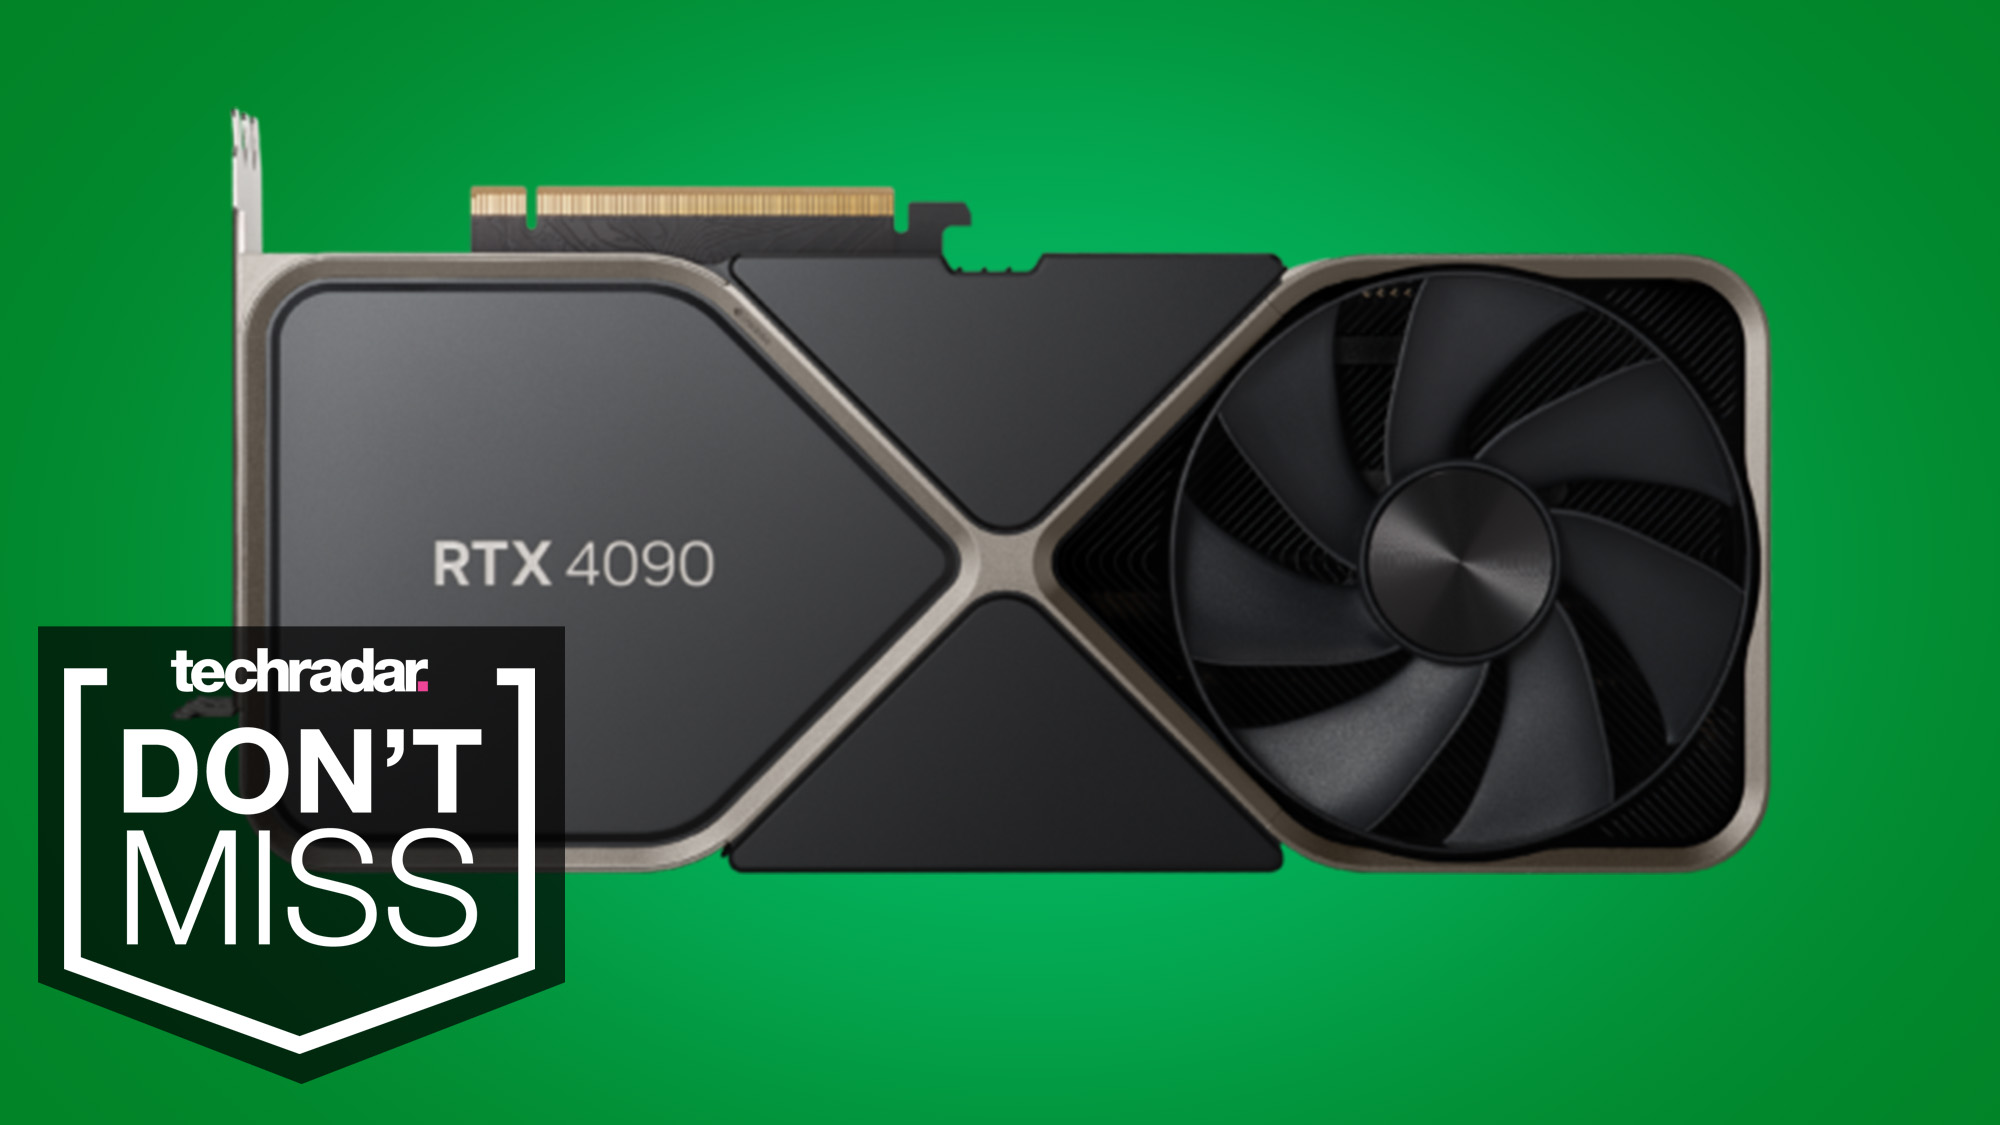 Nvidia RTX 4090 auf grüner Hintergrund